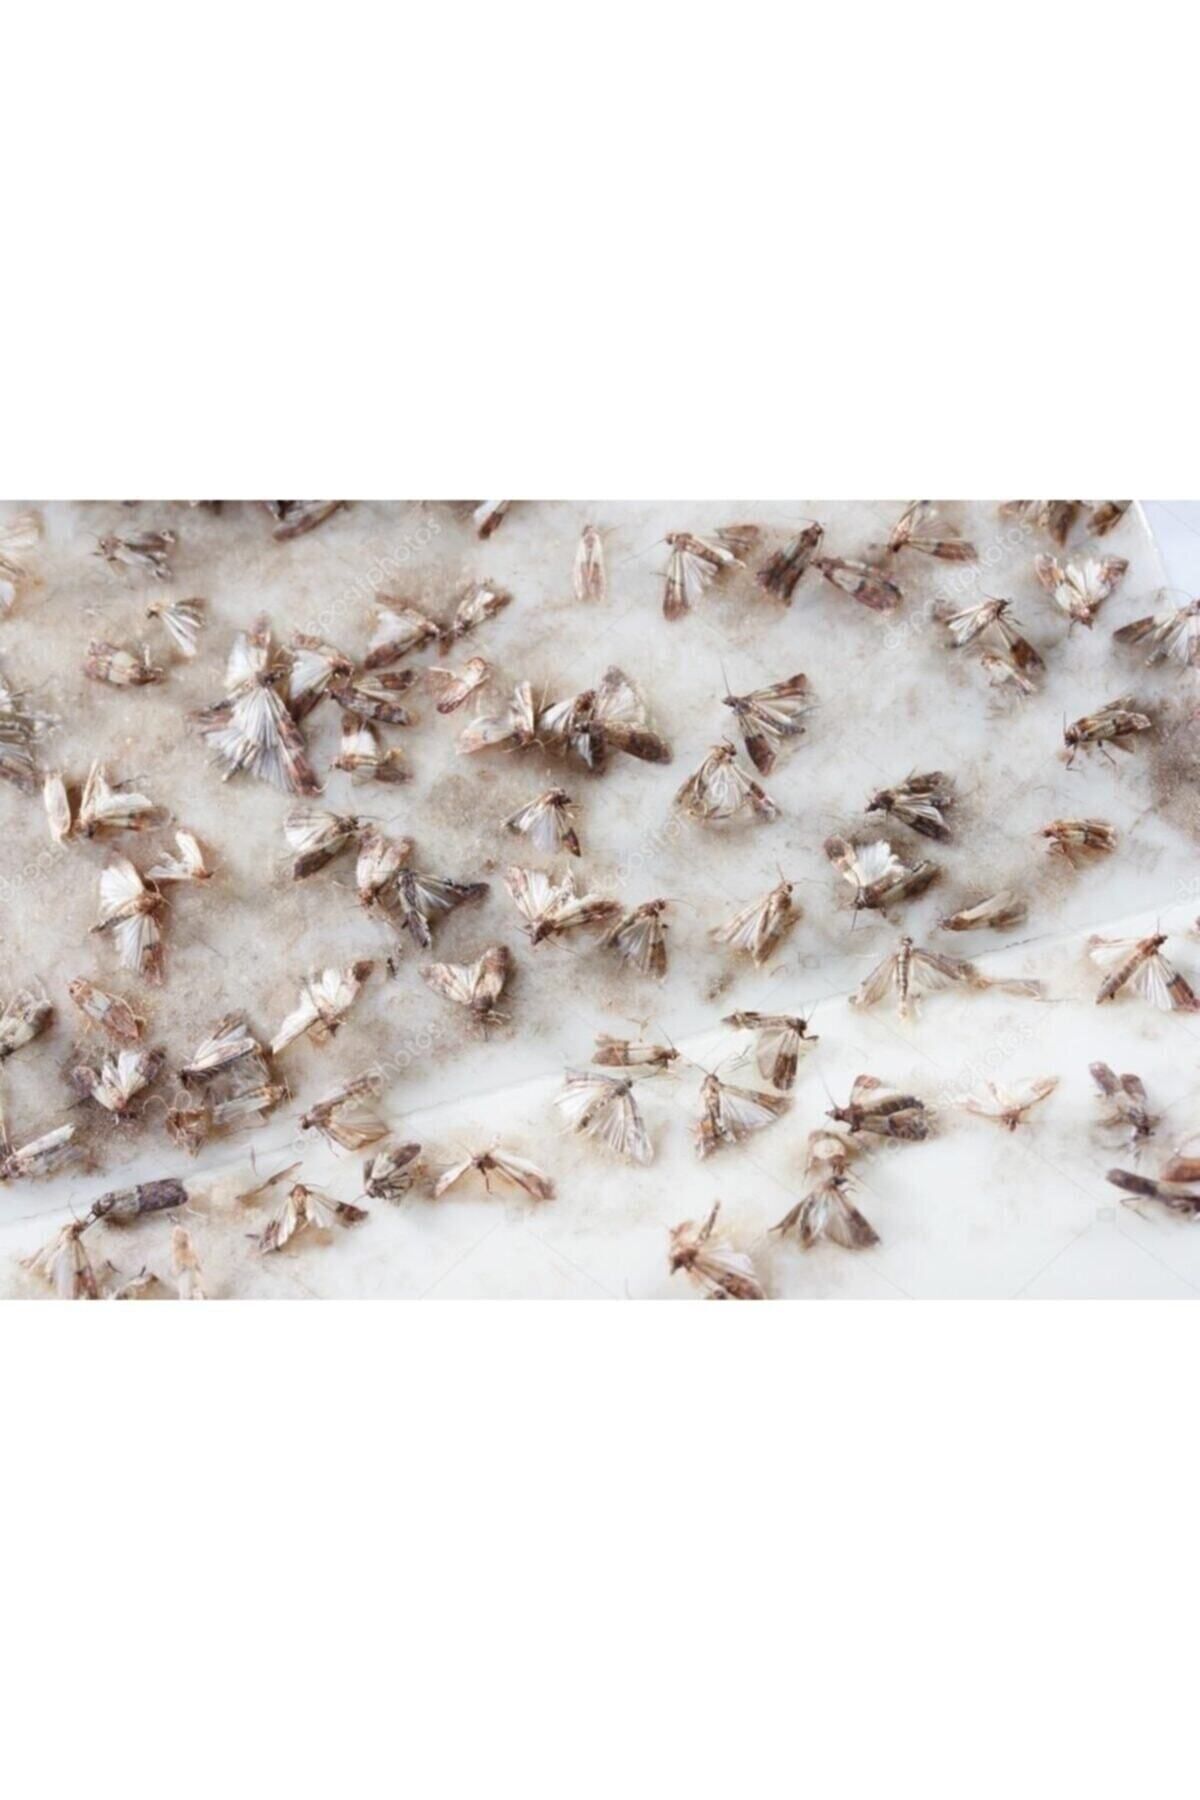 DDPEST Güve Kelebeği Tuzağı Feromonu Ve 3 Adet Yapışkan Plaka Zehirsiz Kesin Çözüm